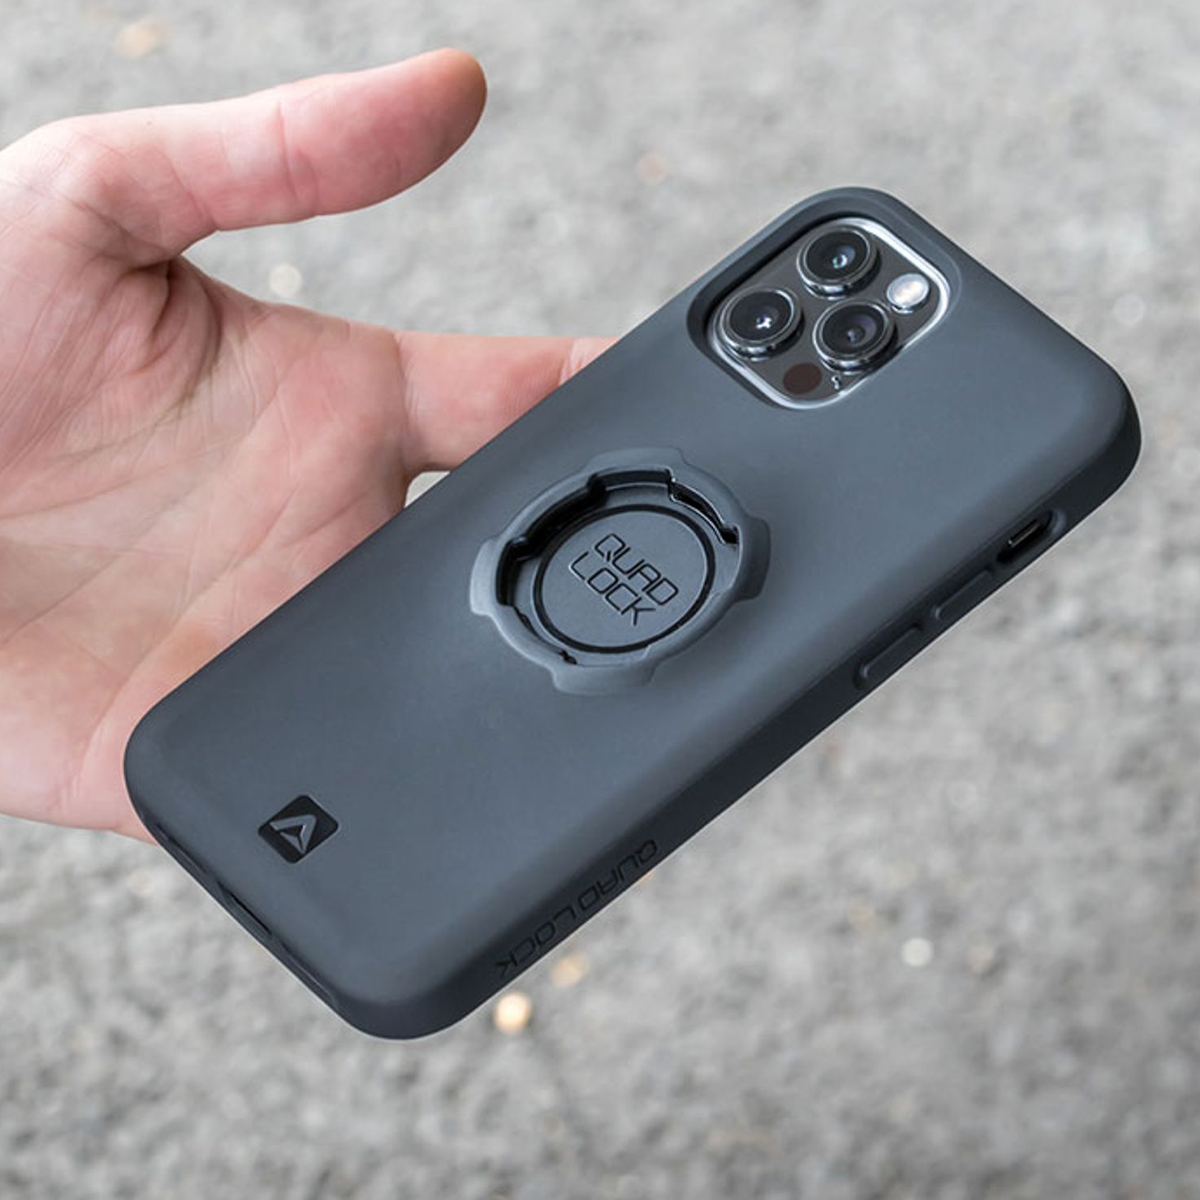 QUAD LOCK MAG smartphone case - iPhone 14 Pro